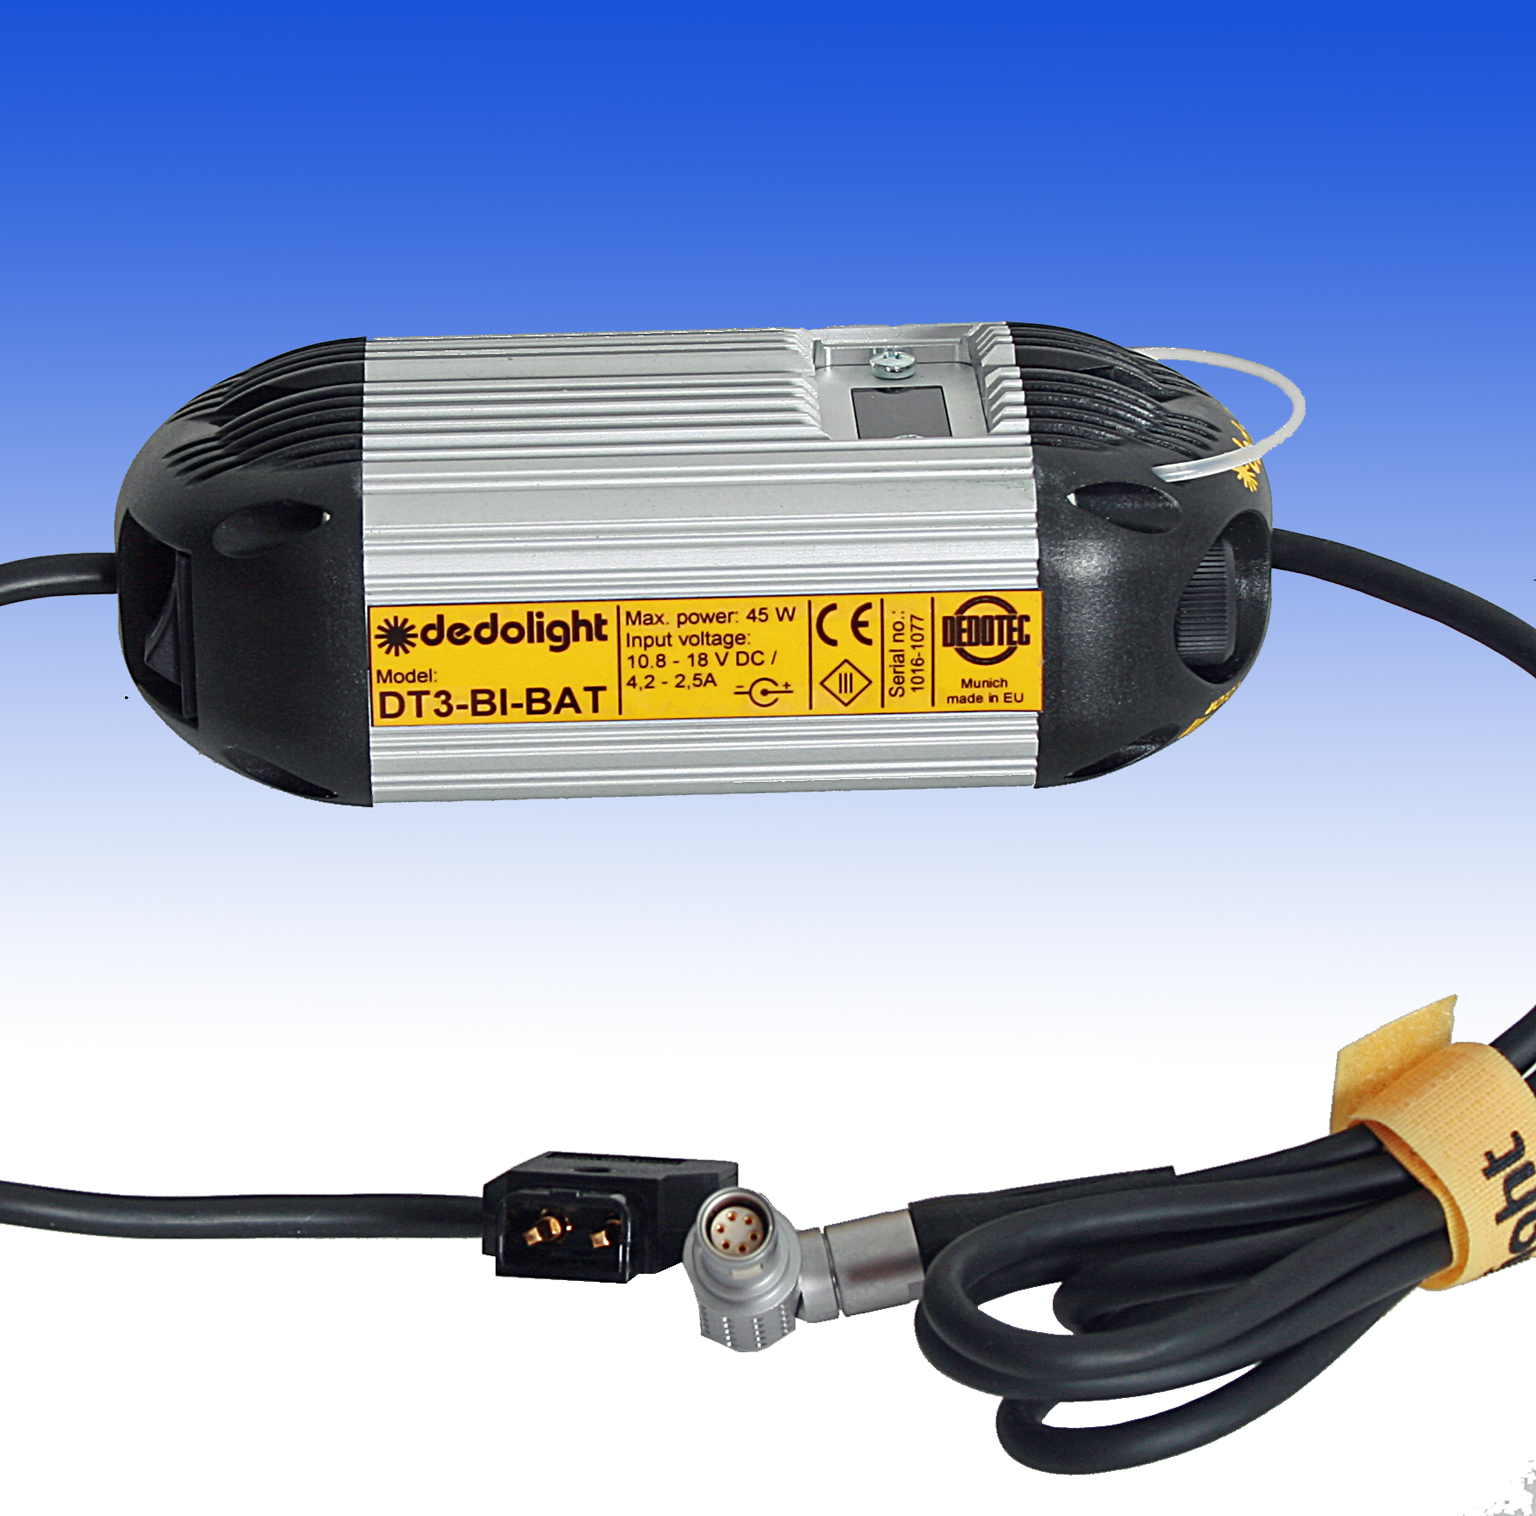 DT3-BI-BAT Vorschaltgerät zur DLED3-BI für Batterie- oder Netzbetrieb